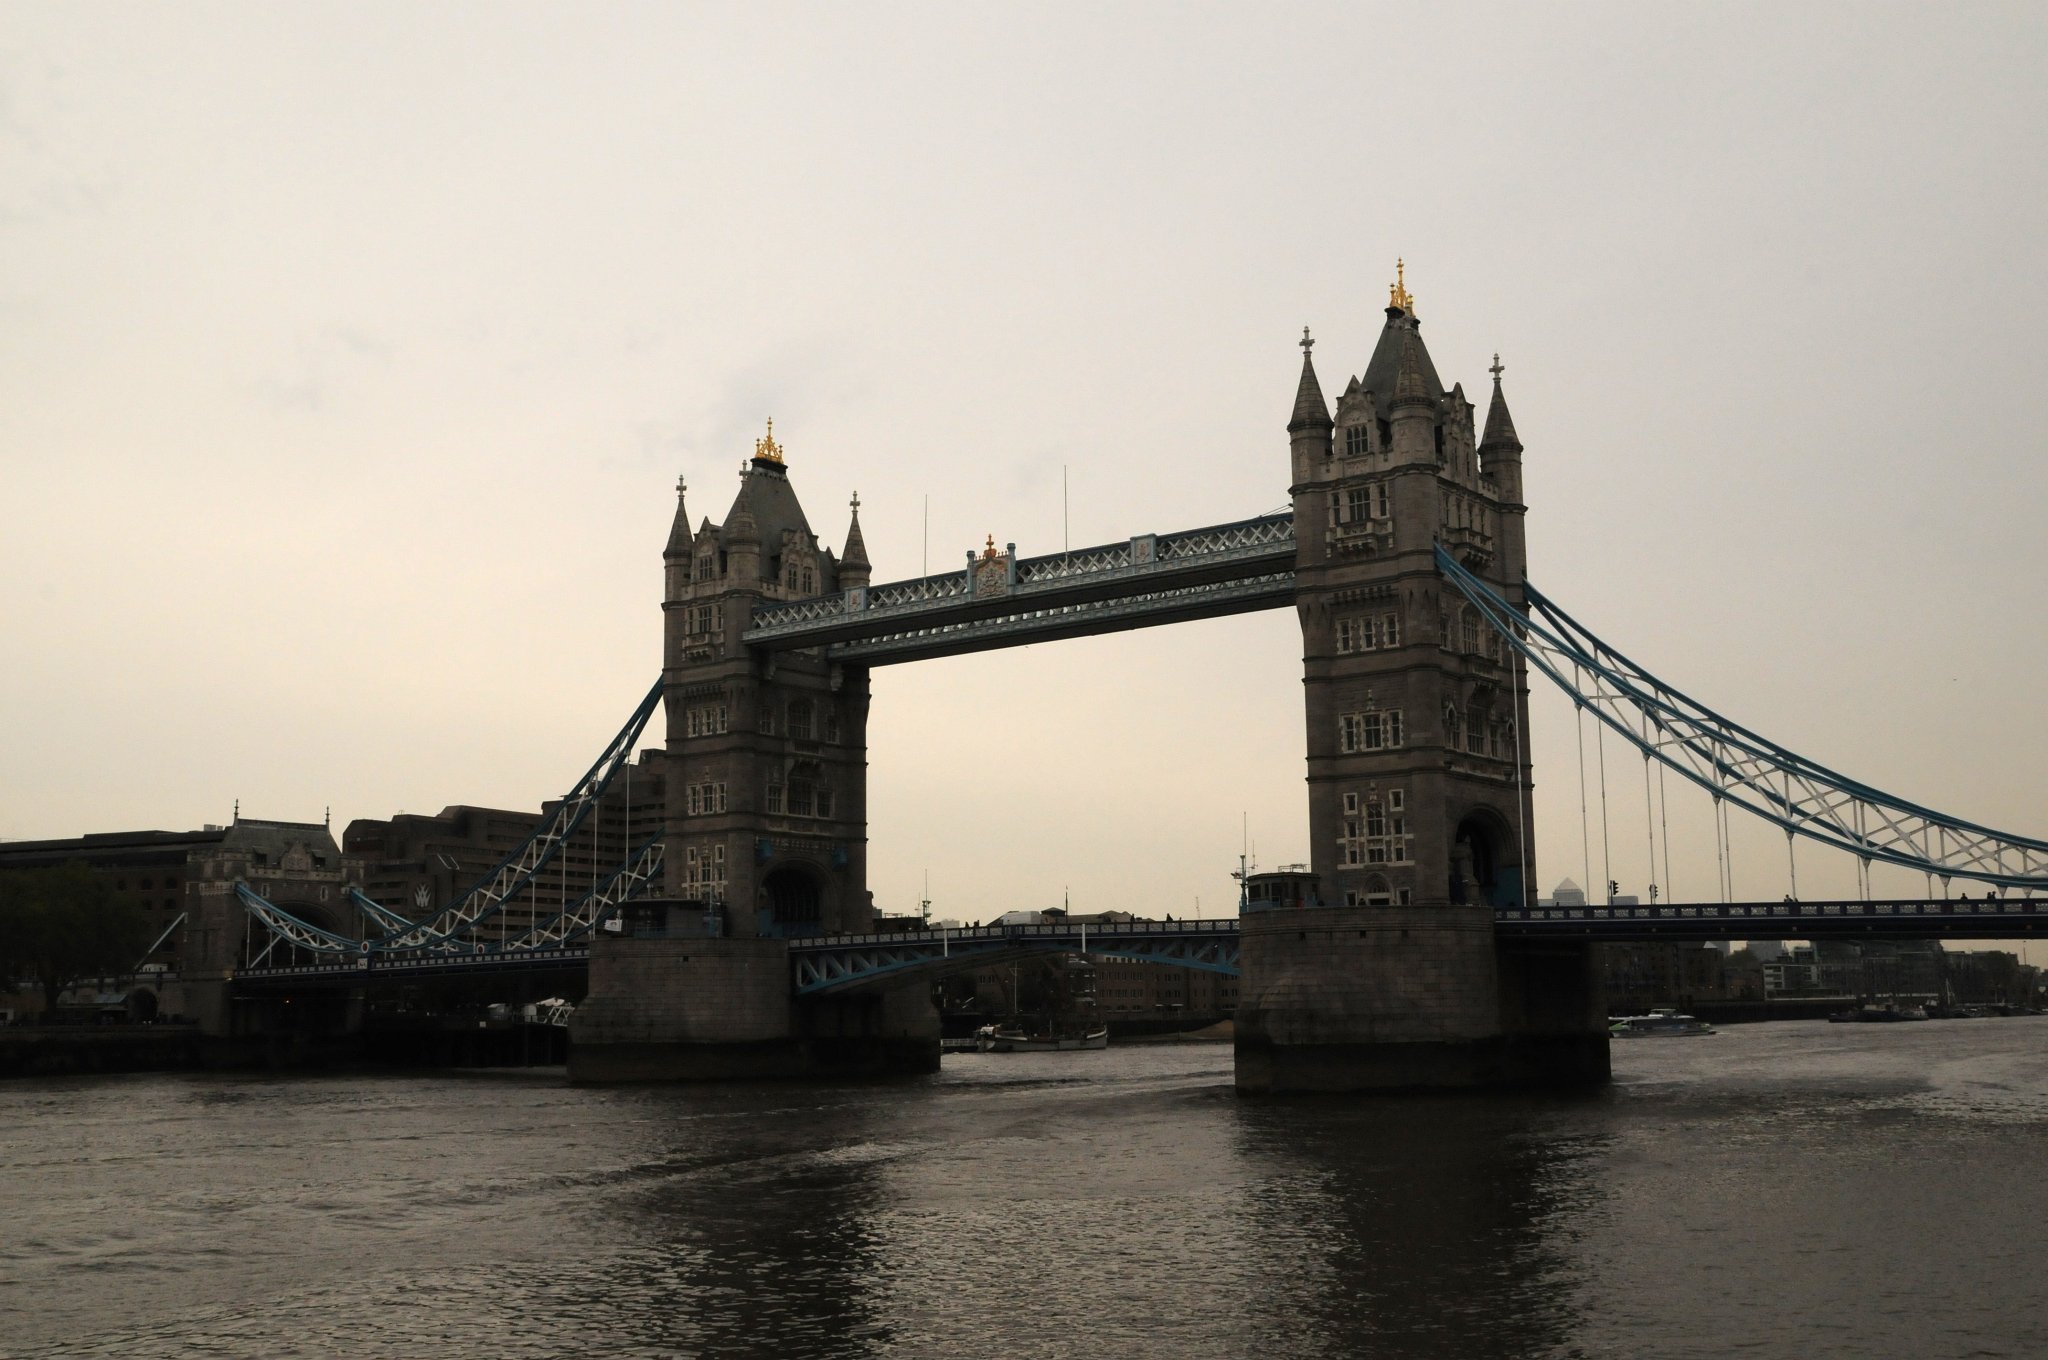 DSC_4995_3.jpg - Zvedací most Tower Bridge na řece Temži v Londýně. Stavba mostu započala roku 1886 a trvala 8 let. Na práci se podílelo 5 hlavních dodavatelů a 432 dělníků.